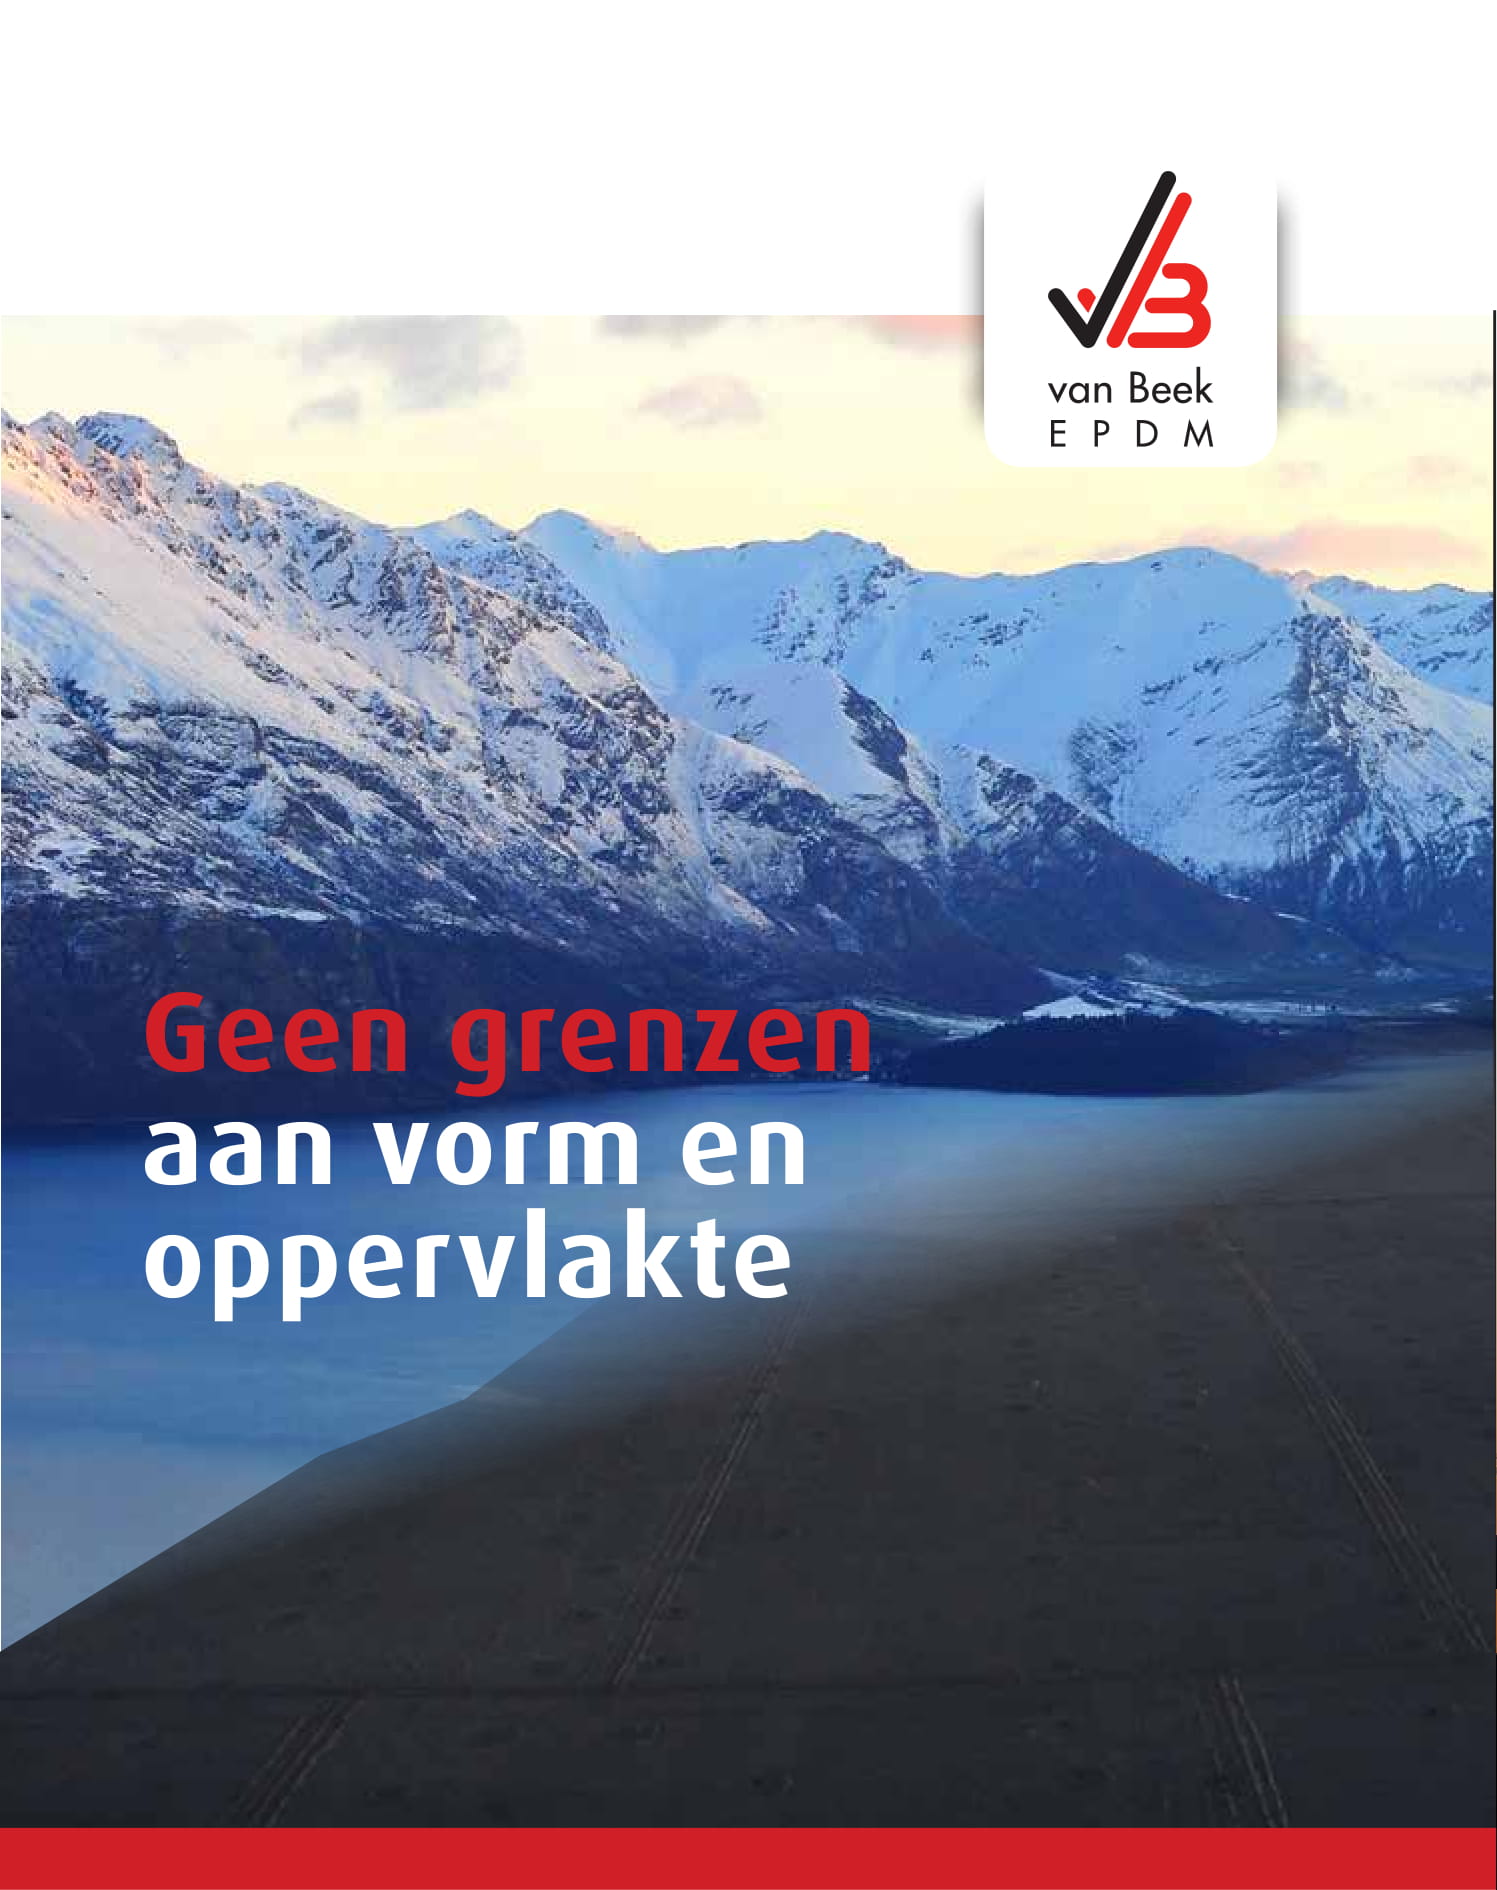 VB bedrijfsfolder NL 1